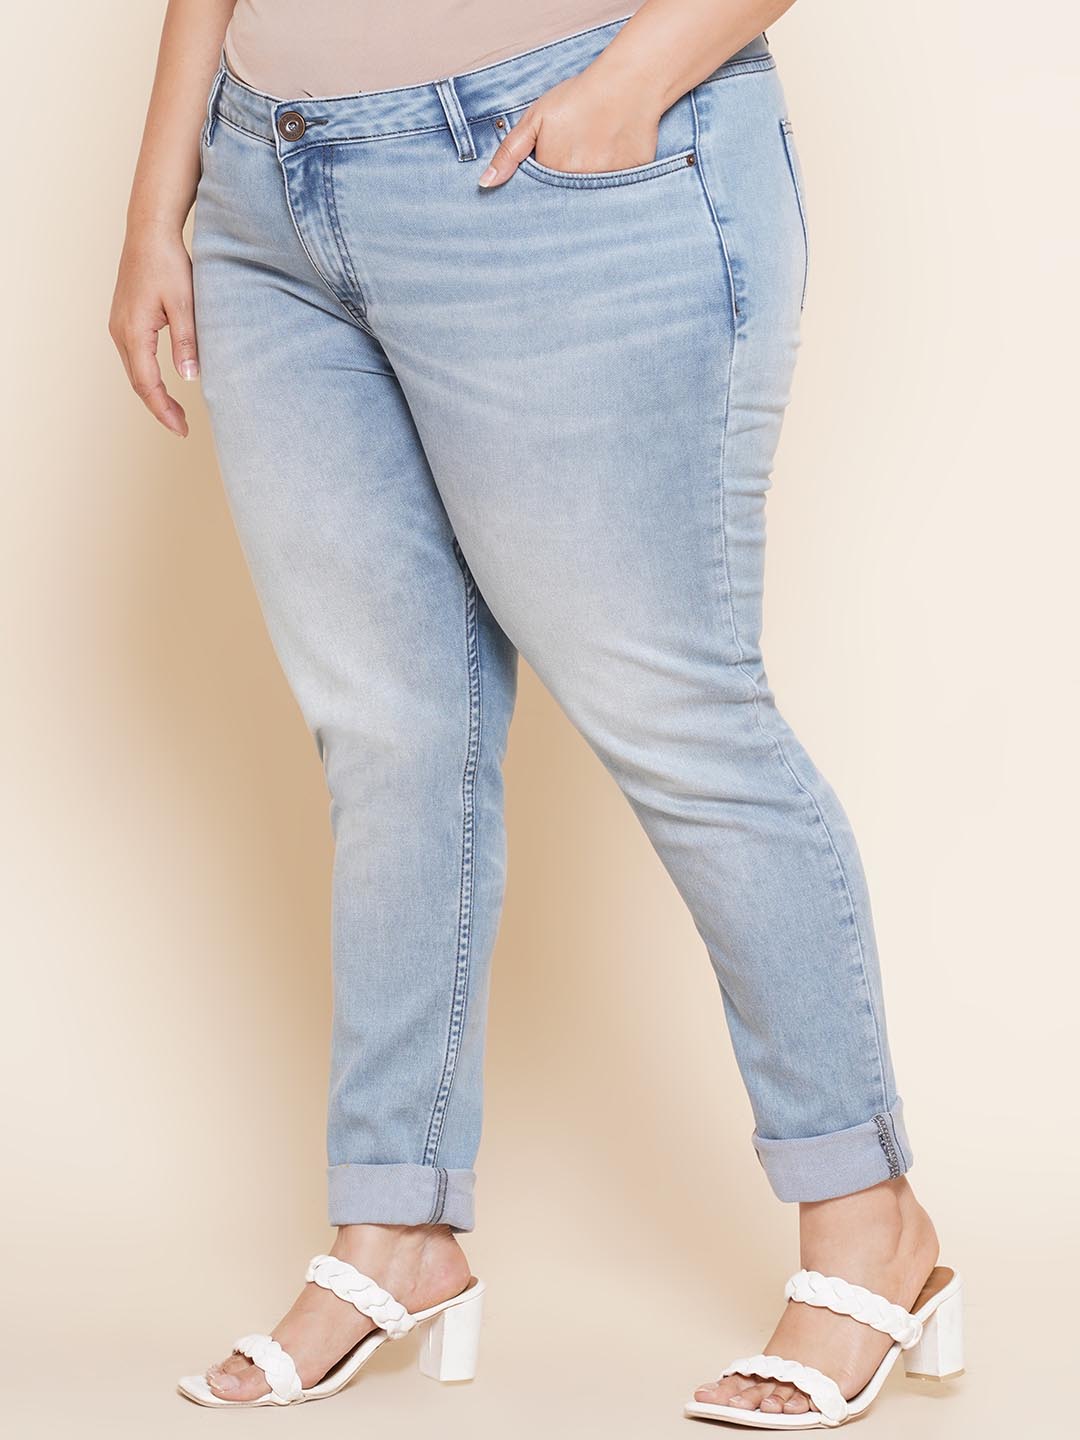 bottomwear_kiaahvi/jeans/KIJ6008/kij6008-4.jpg